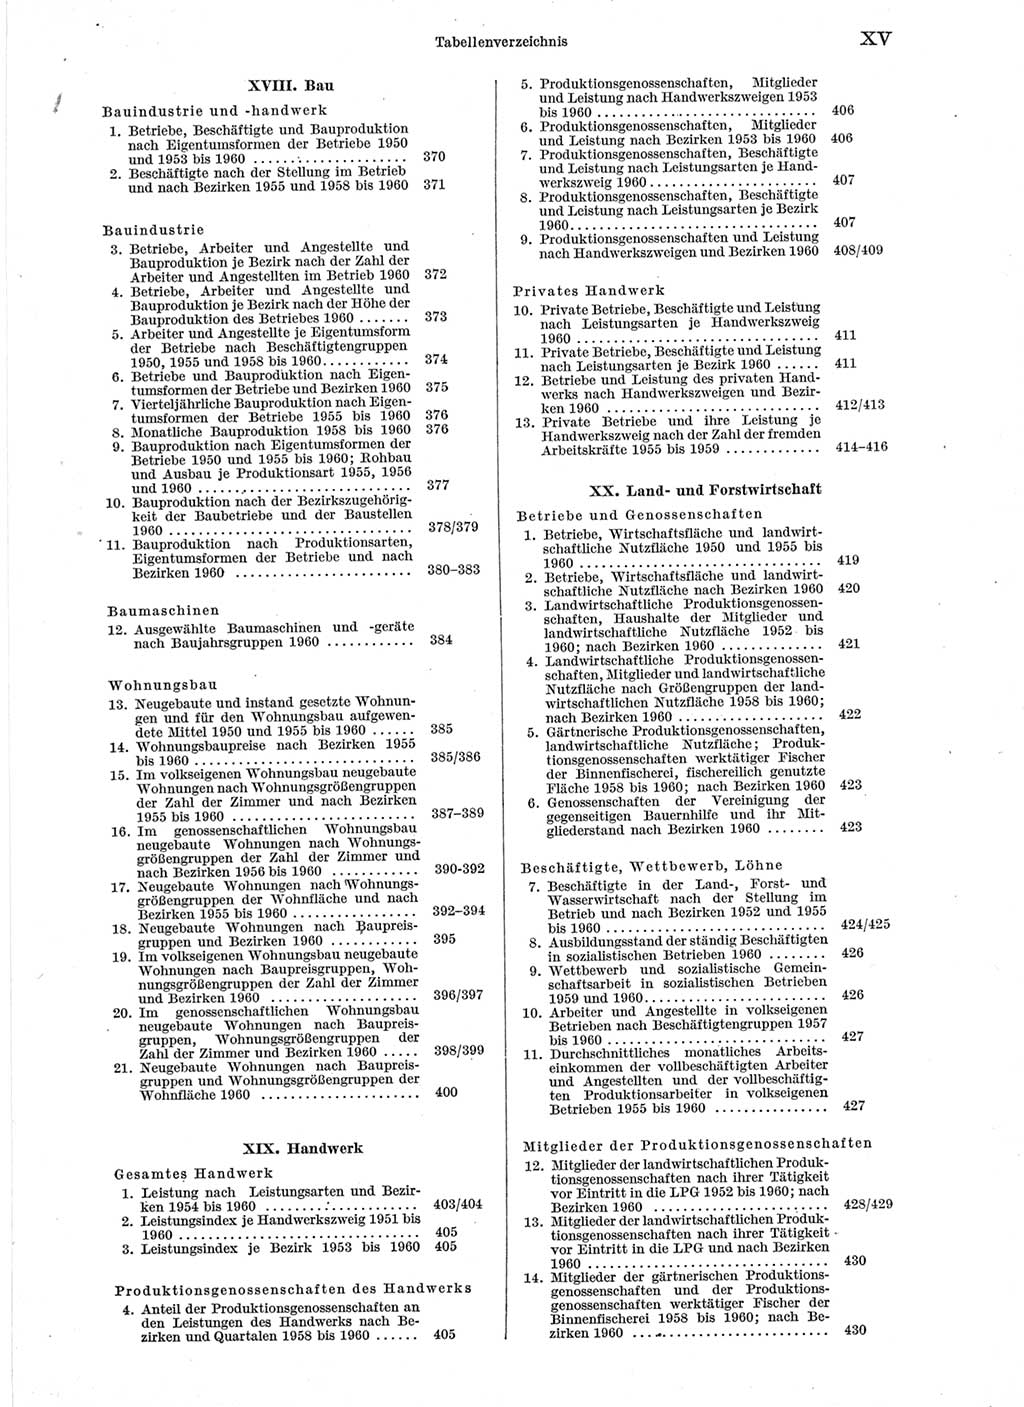 Statistisches Jahrbuch der Deutschen Demokratischen Republik (DDR) 1960-1961, Seite 15 (Stat. Jb. DDR 1960-1961, S. 15)